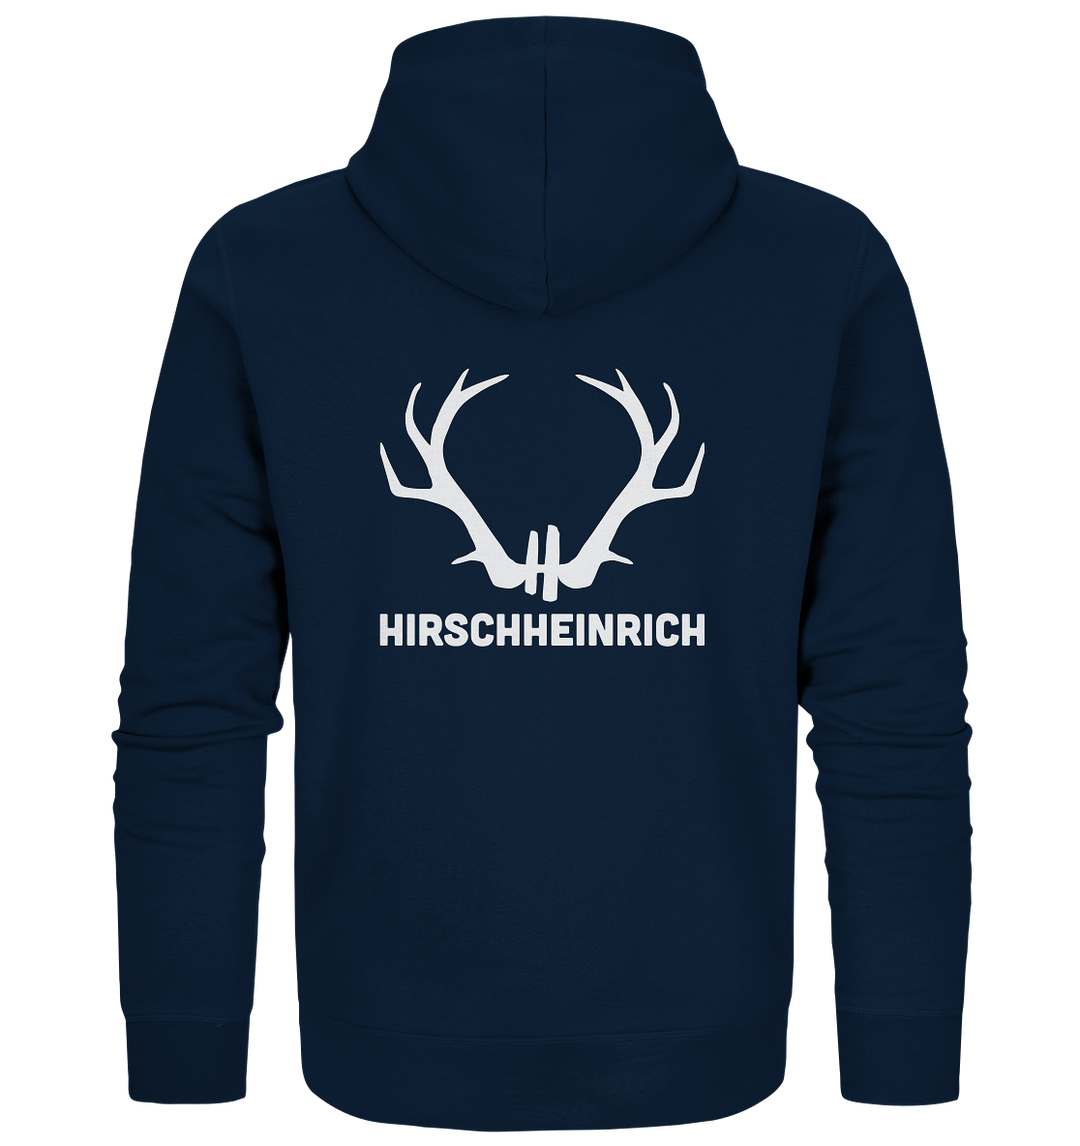 HIRSCHHEINRICH   - Bio Zipper Unisex